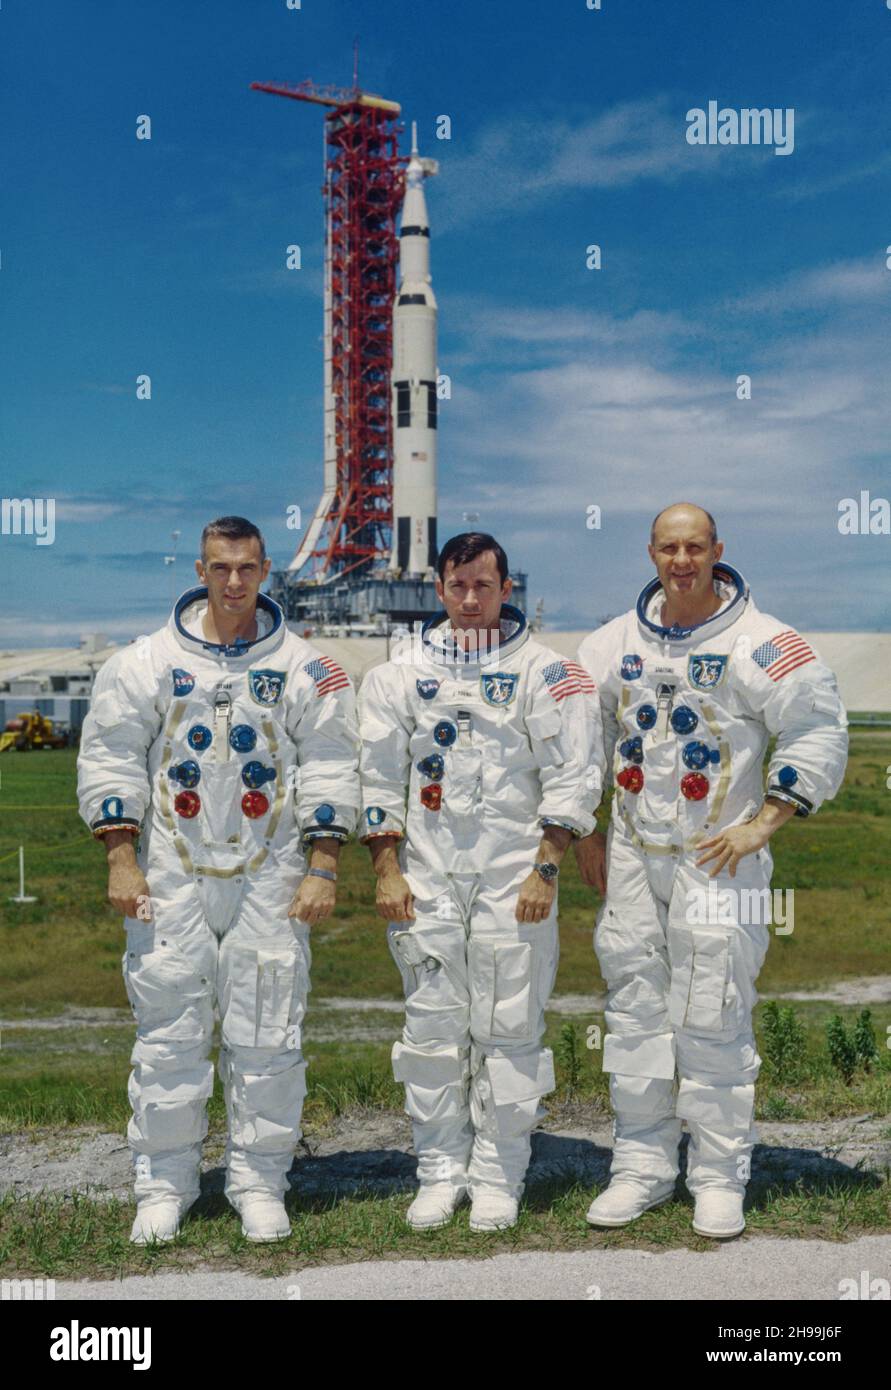 Equipo de primera de la misión de la órbita lunar Apolo 10. De izquierda a derecha están Eugene A. Cernan, piloto del módulo lunar; John W. Young, piloto del módulo de mando; y Thomas P. Stafford, comandante. En el fondo está el vehículo espacial Apollo 10 en el Pad B, Launch Complex 39, Kennedy Space Center, Florida. Foto de stock